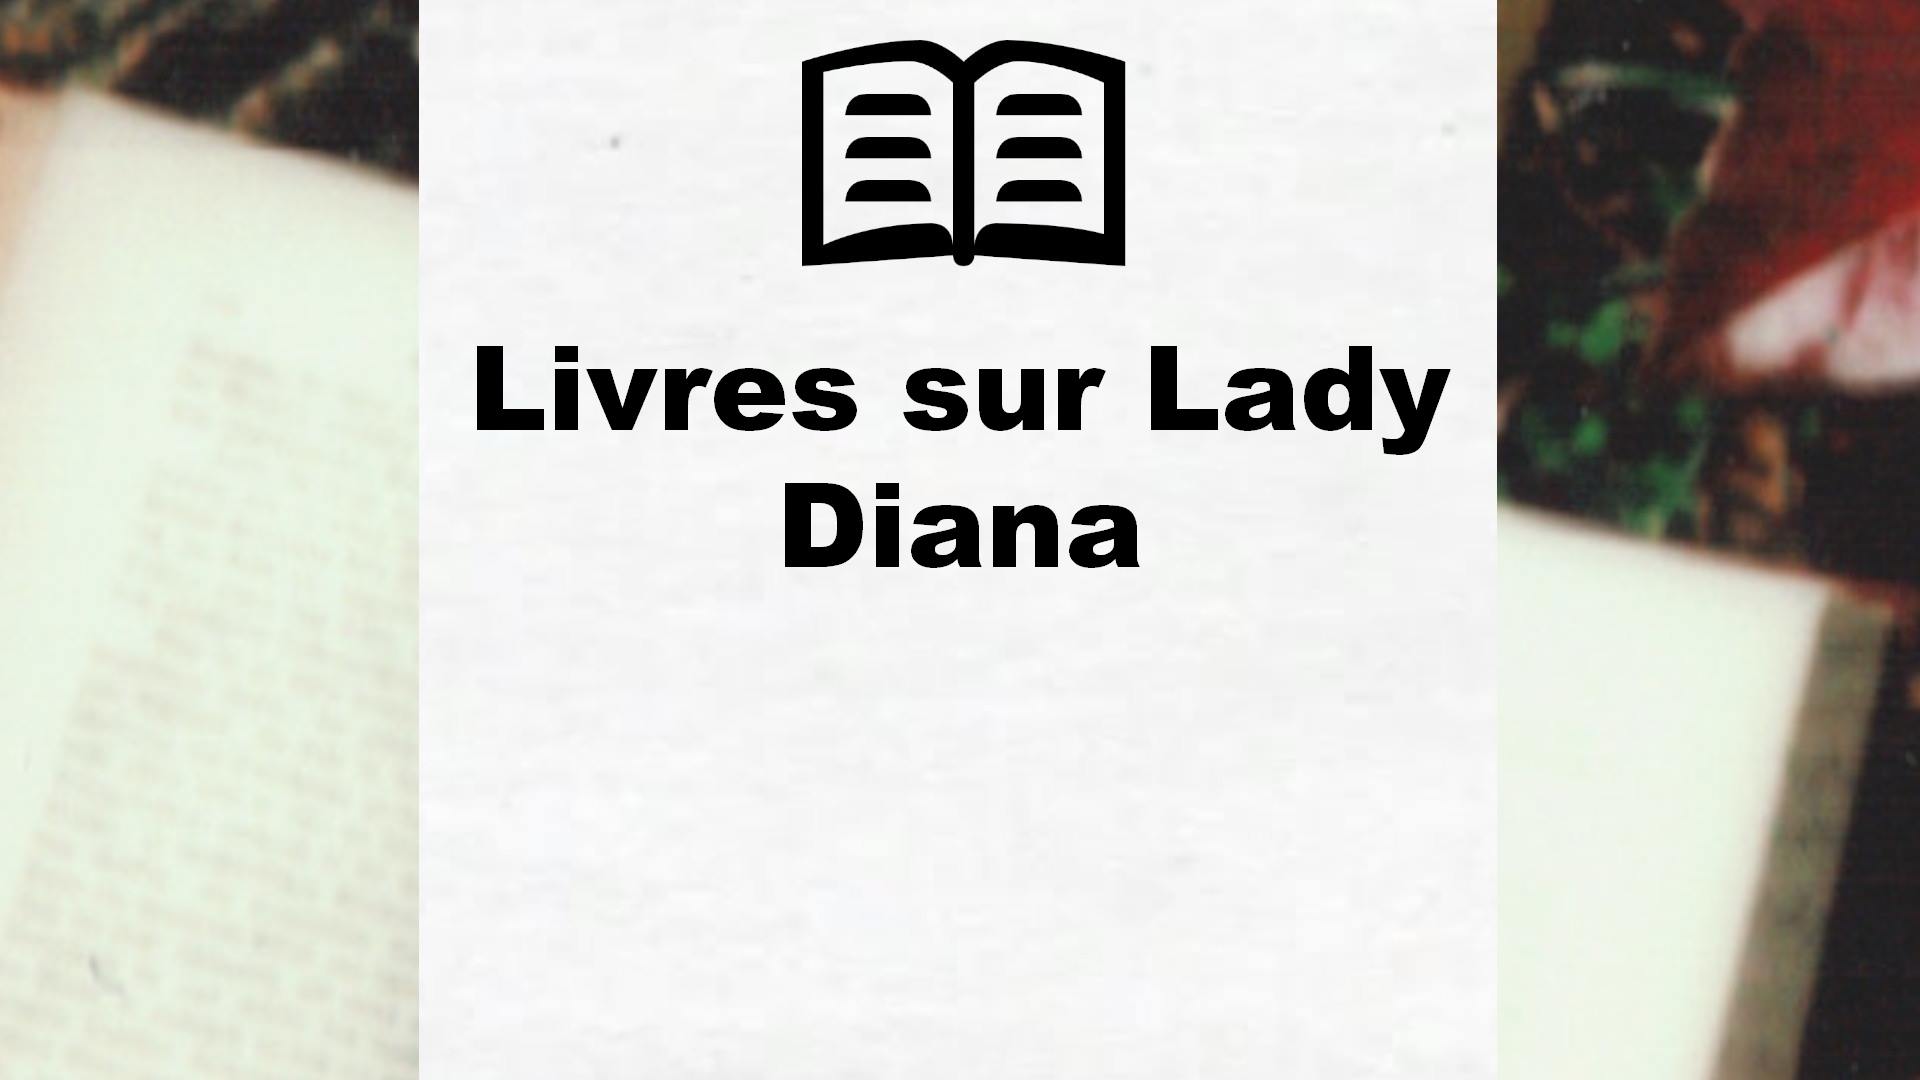 Livres sur Lady Diana